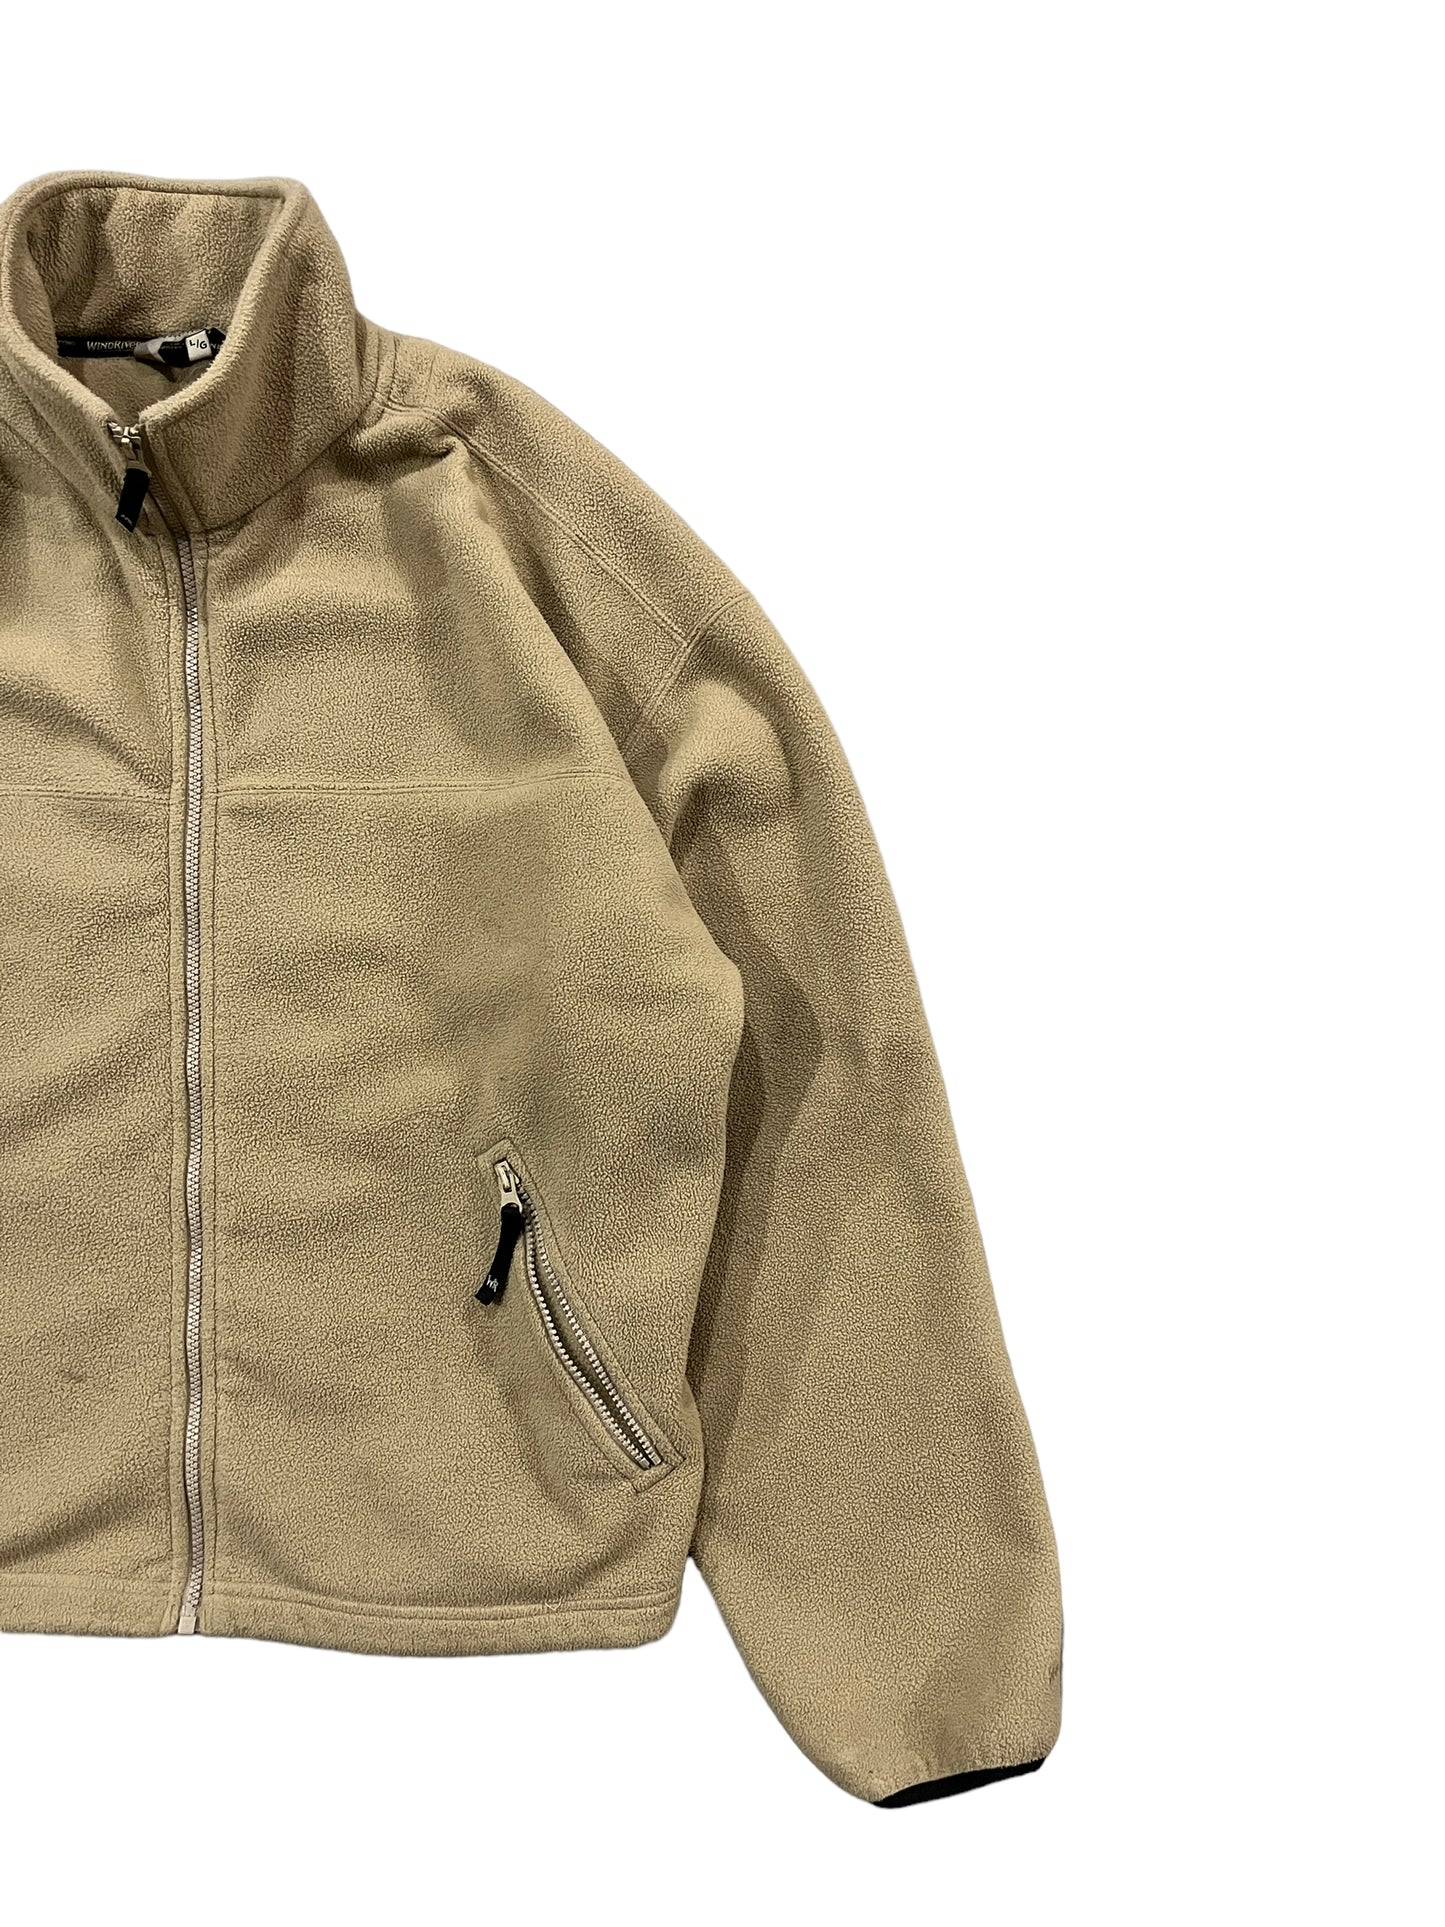 Vintage Windriver Fleece Zip Up Jacket